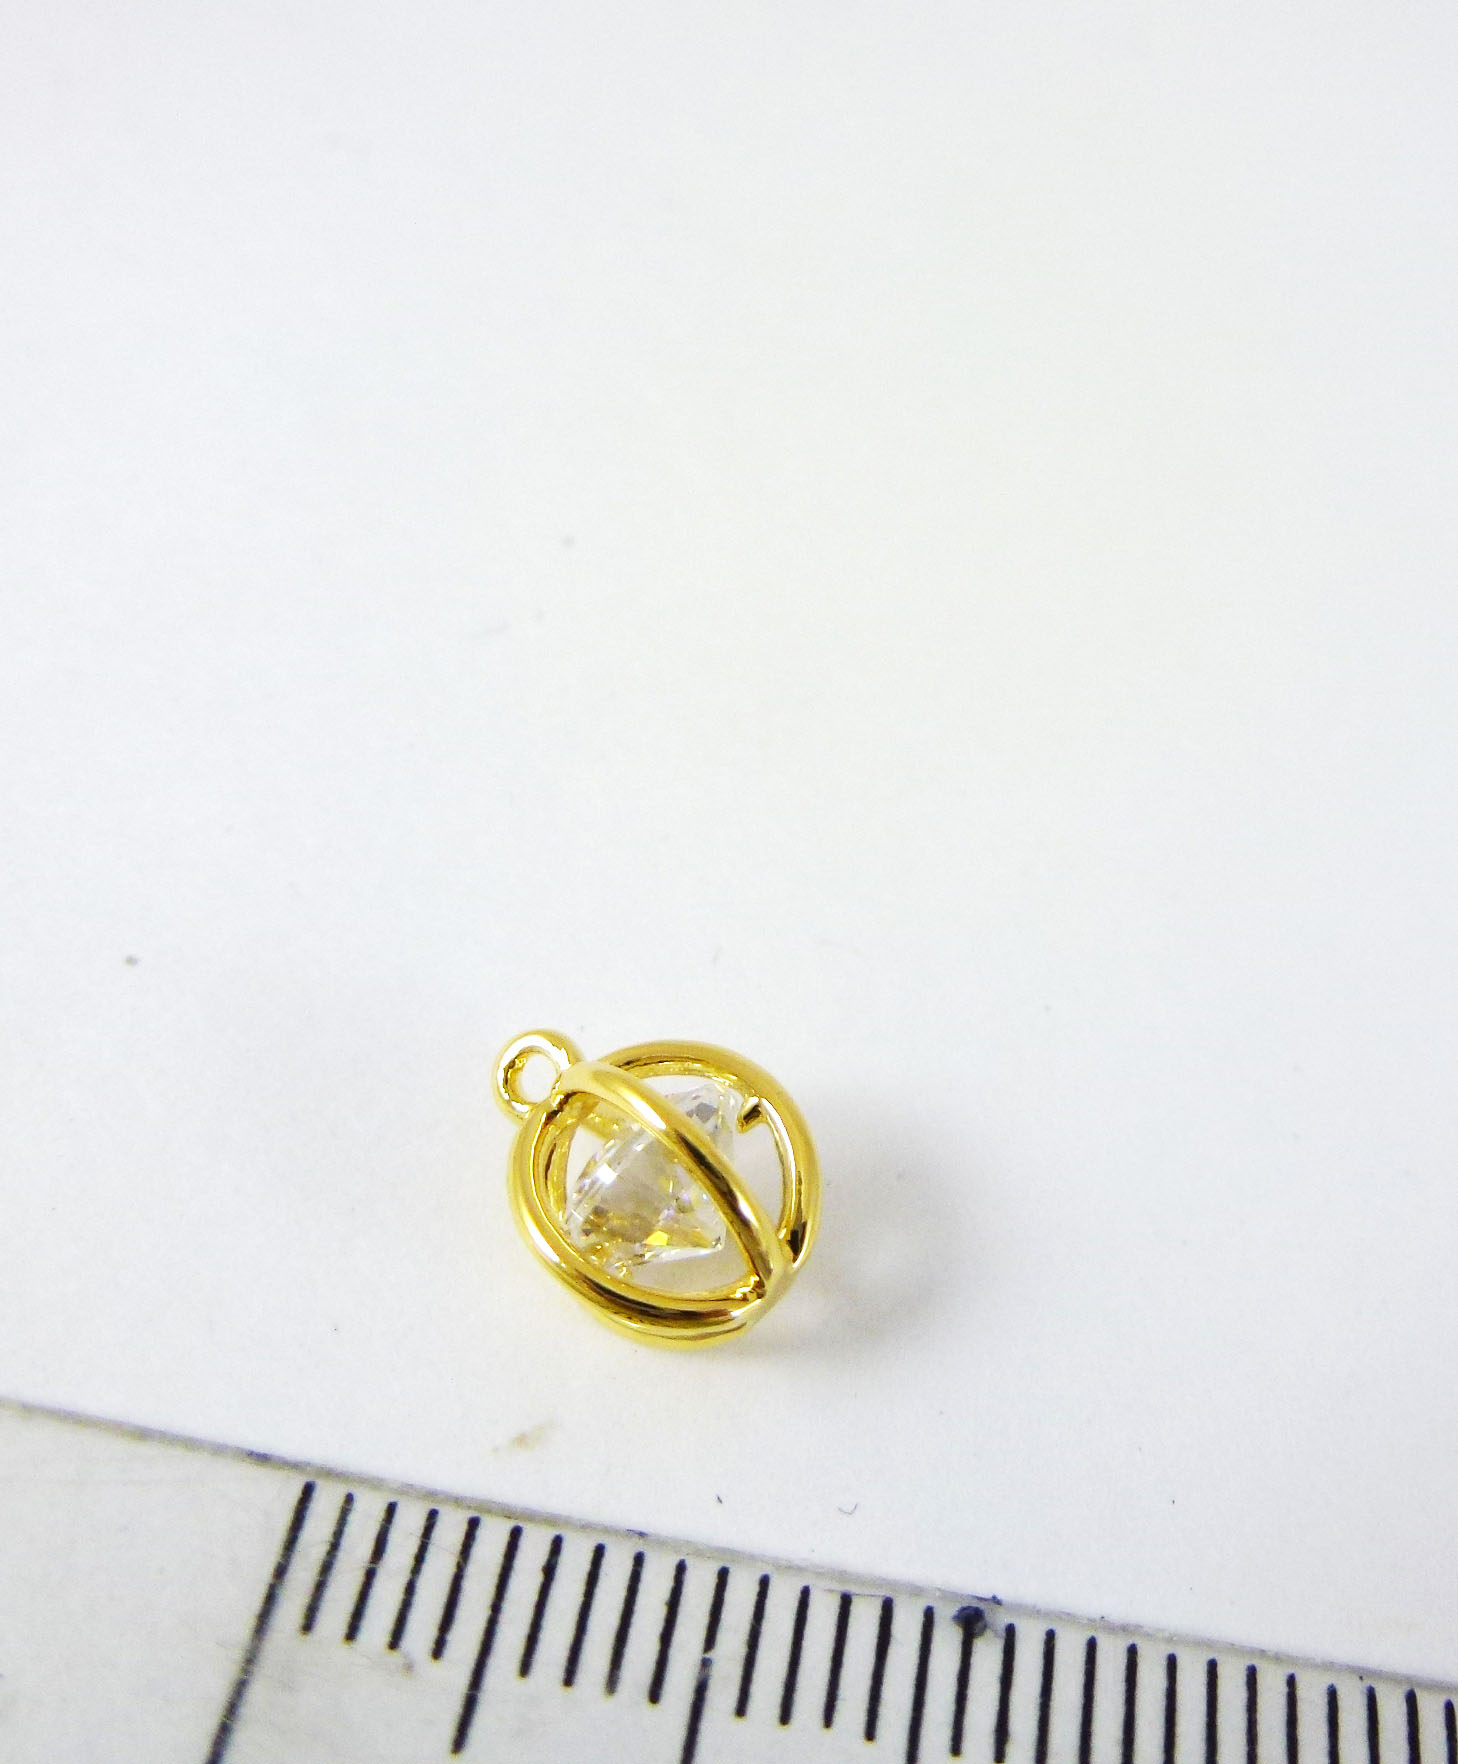 8mm銅鍍金單孔線球包鑽